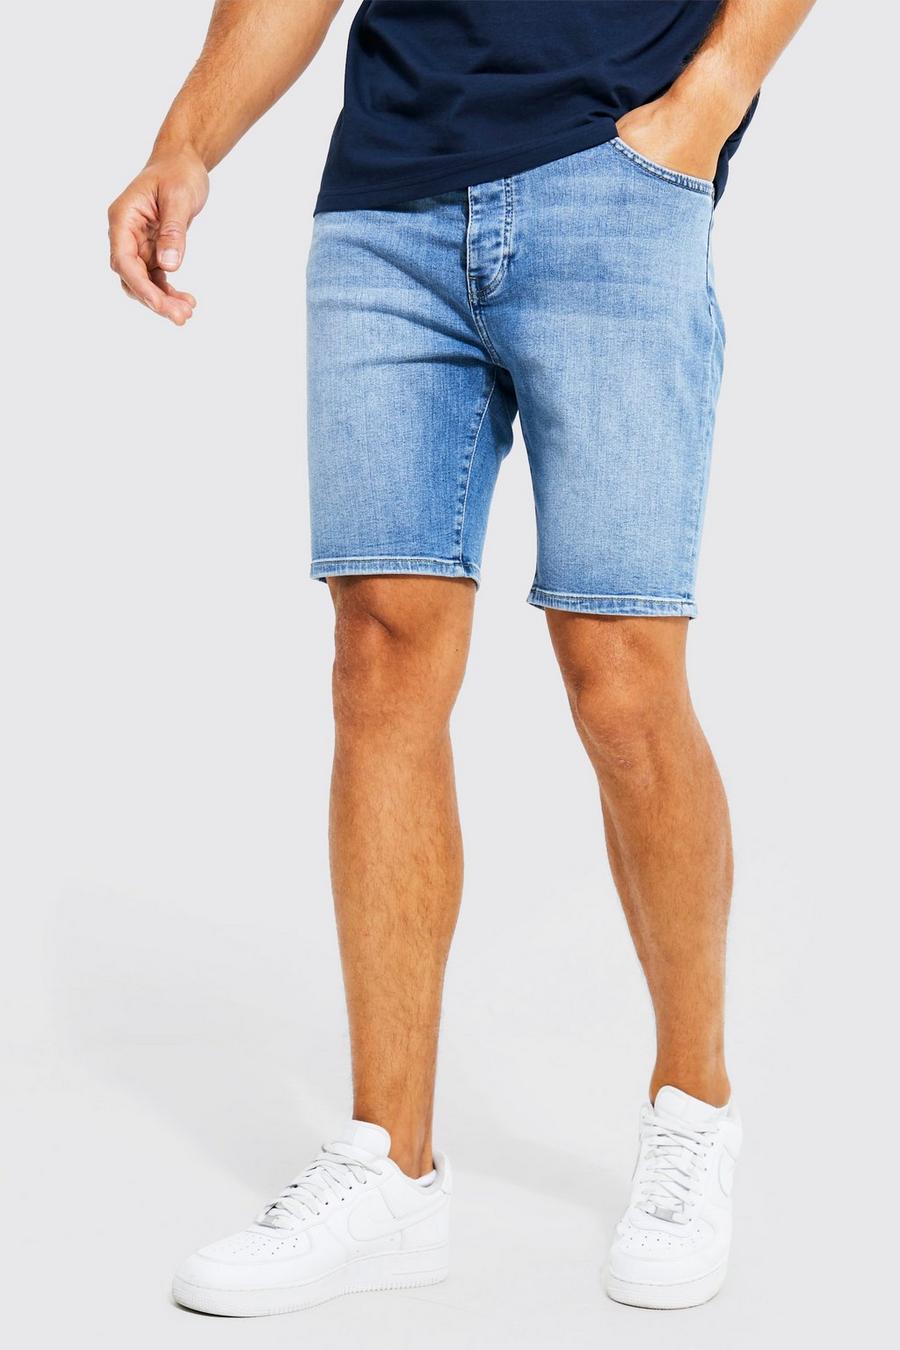 כחול ביניים שורט בגזרת סקיני מבד ג'ינס נמתח לגברים גבוהים image number 1